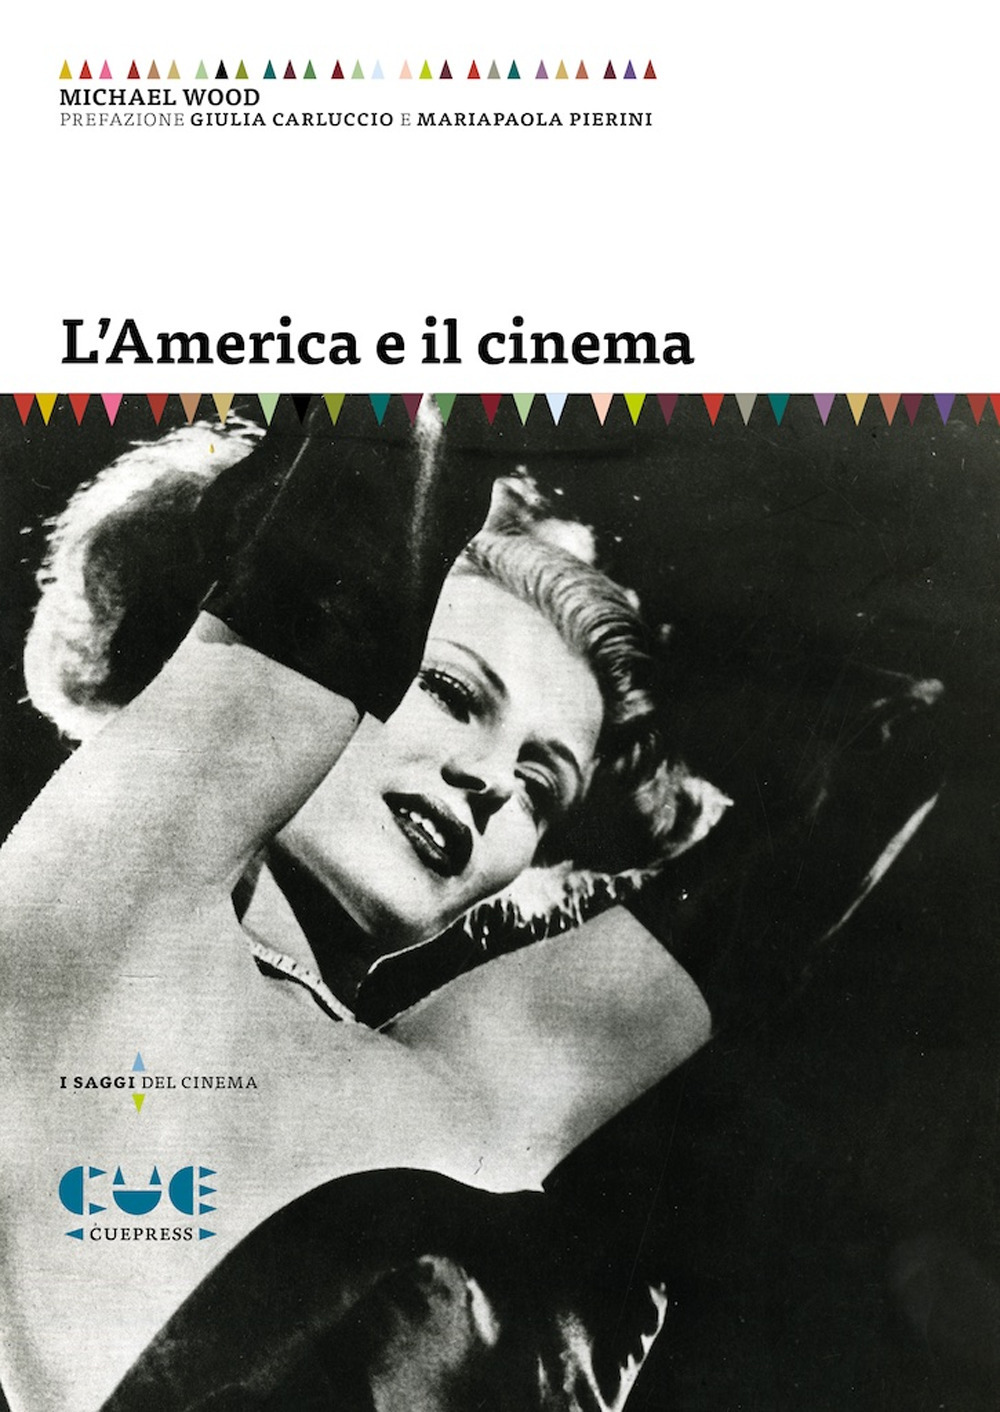 Libri Michael Wood - L' America E Il Cinema NUOVO SIGILLATO, EDIZIONE DEL 09/07/2022 SUBITO DISPONIBILE